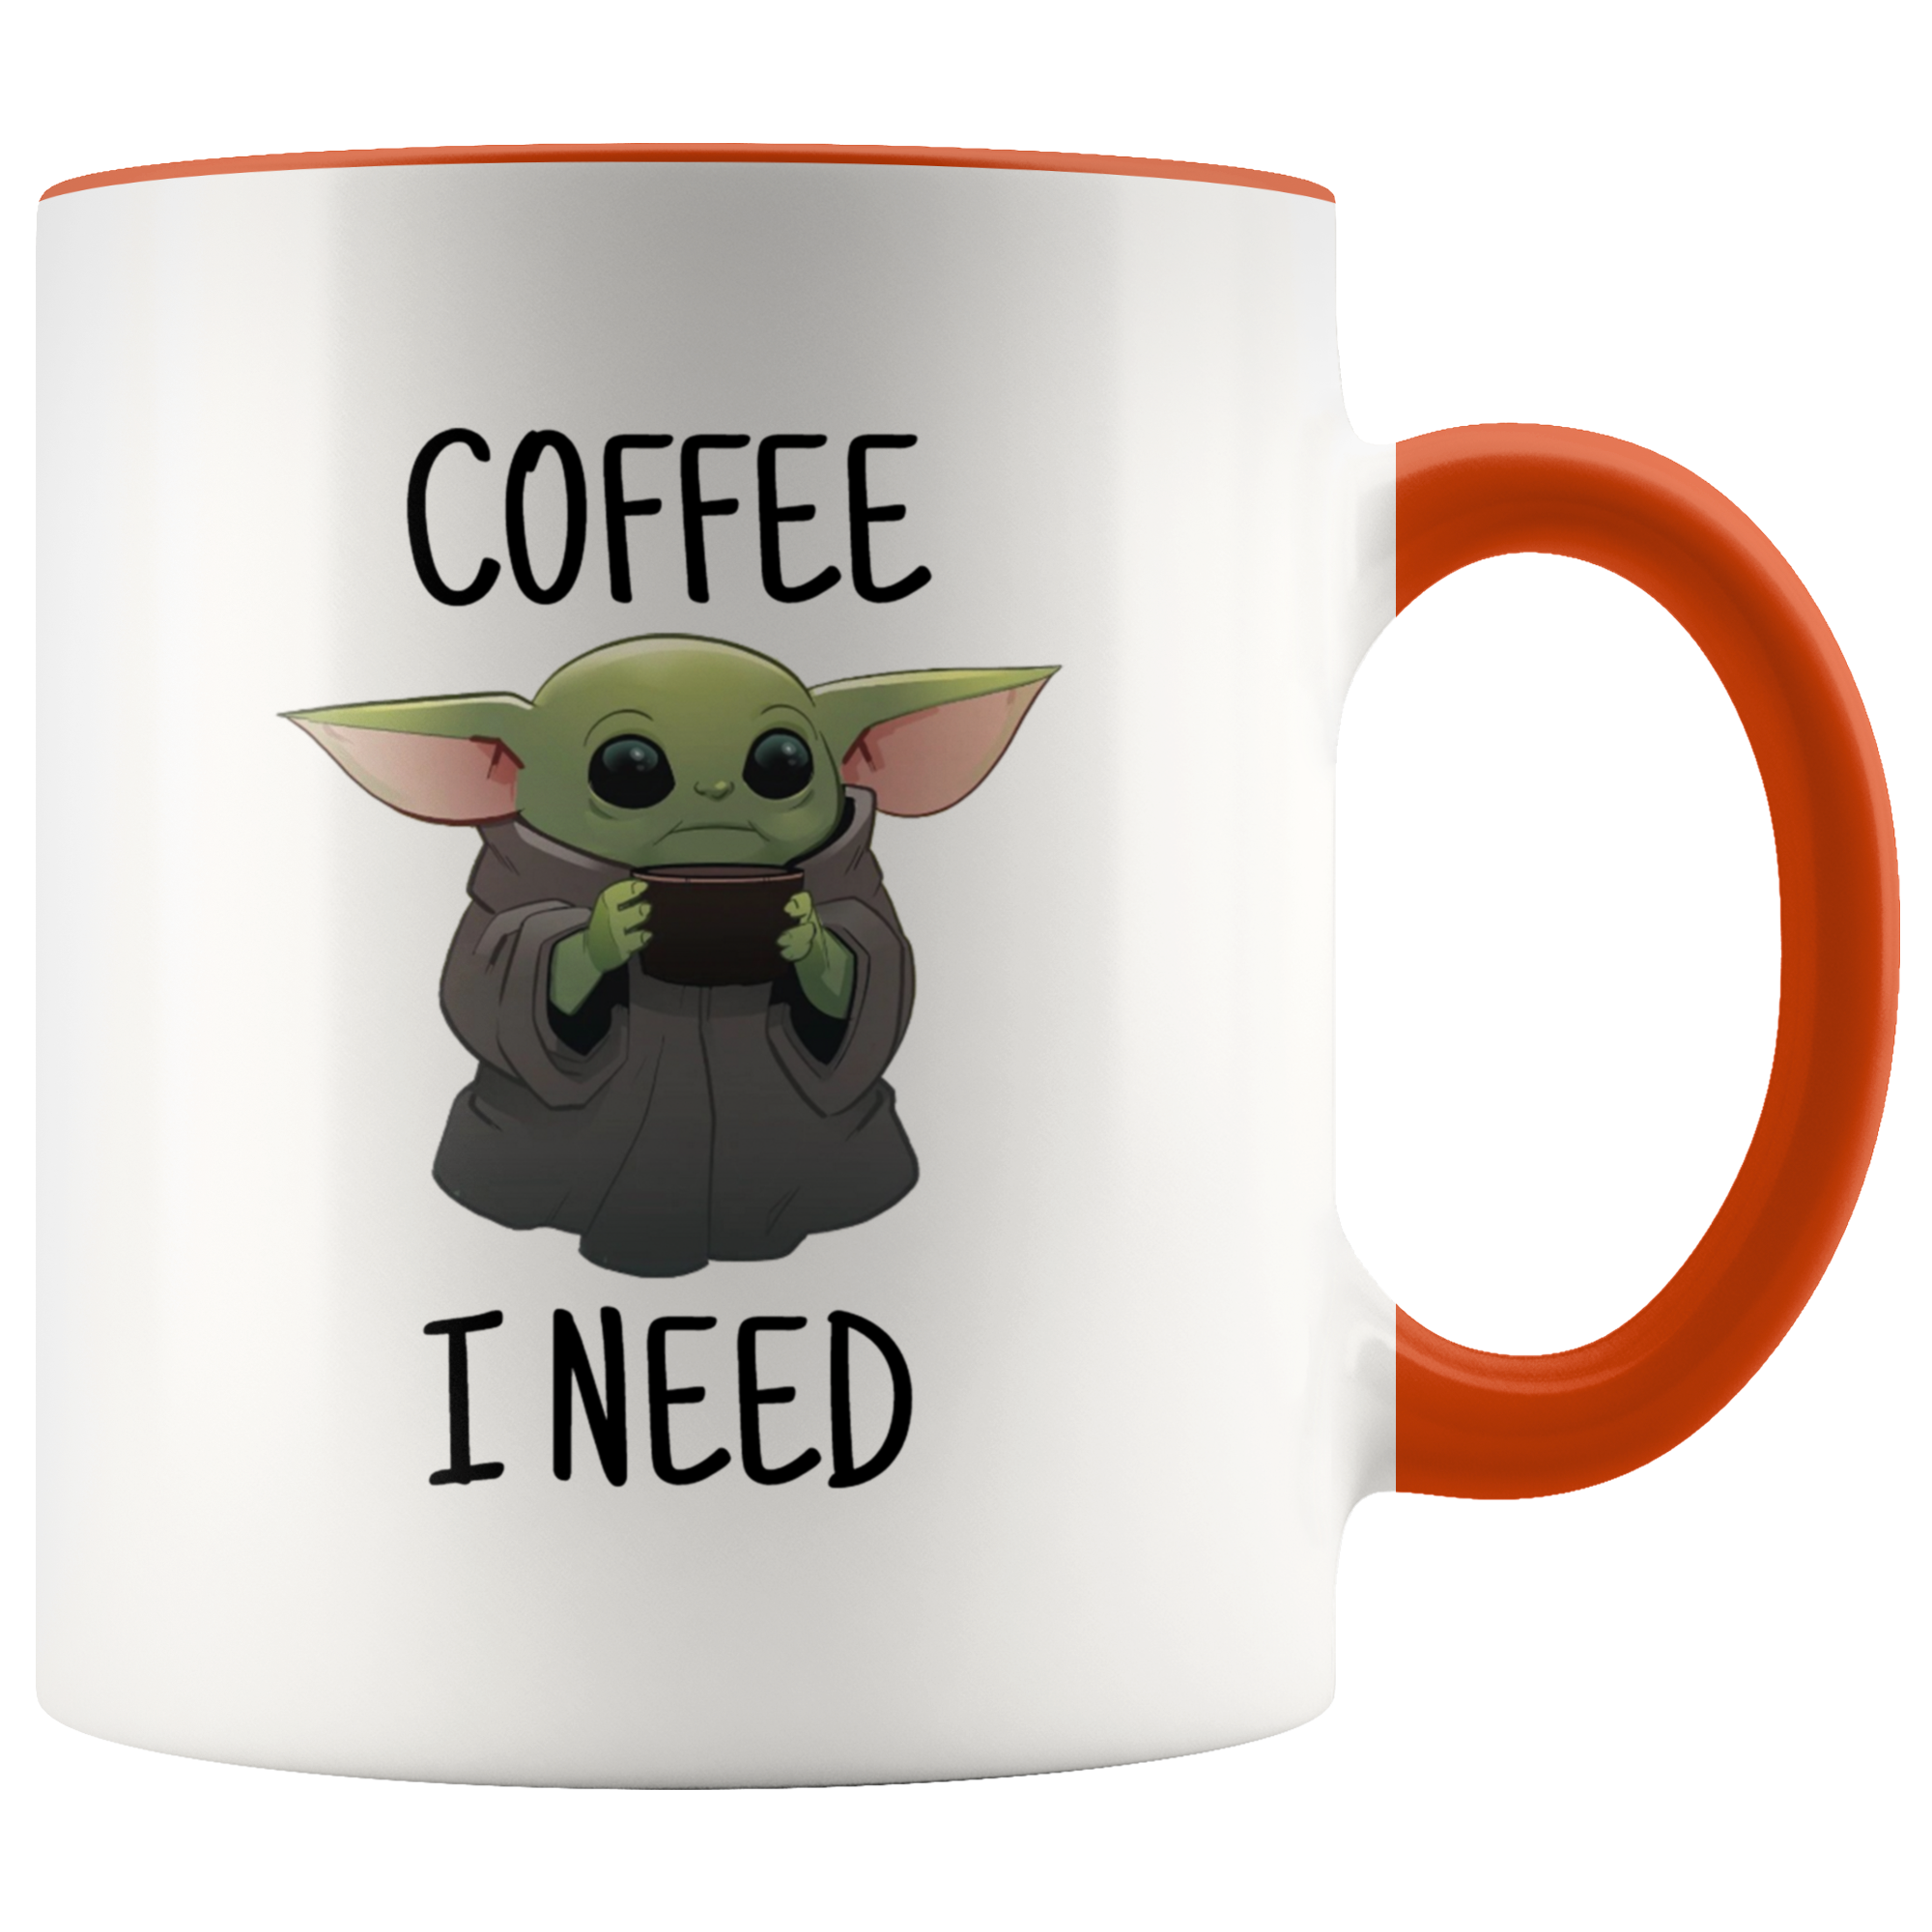 Coffee I Need Baby Yoda Mug